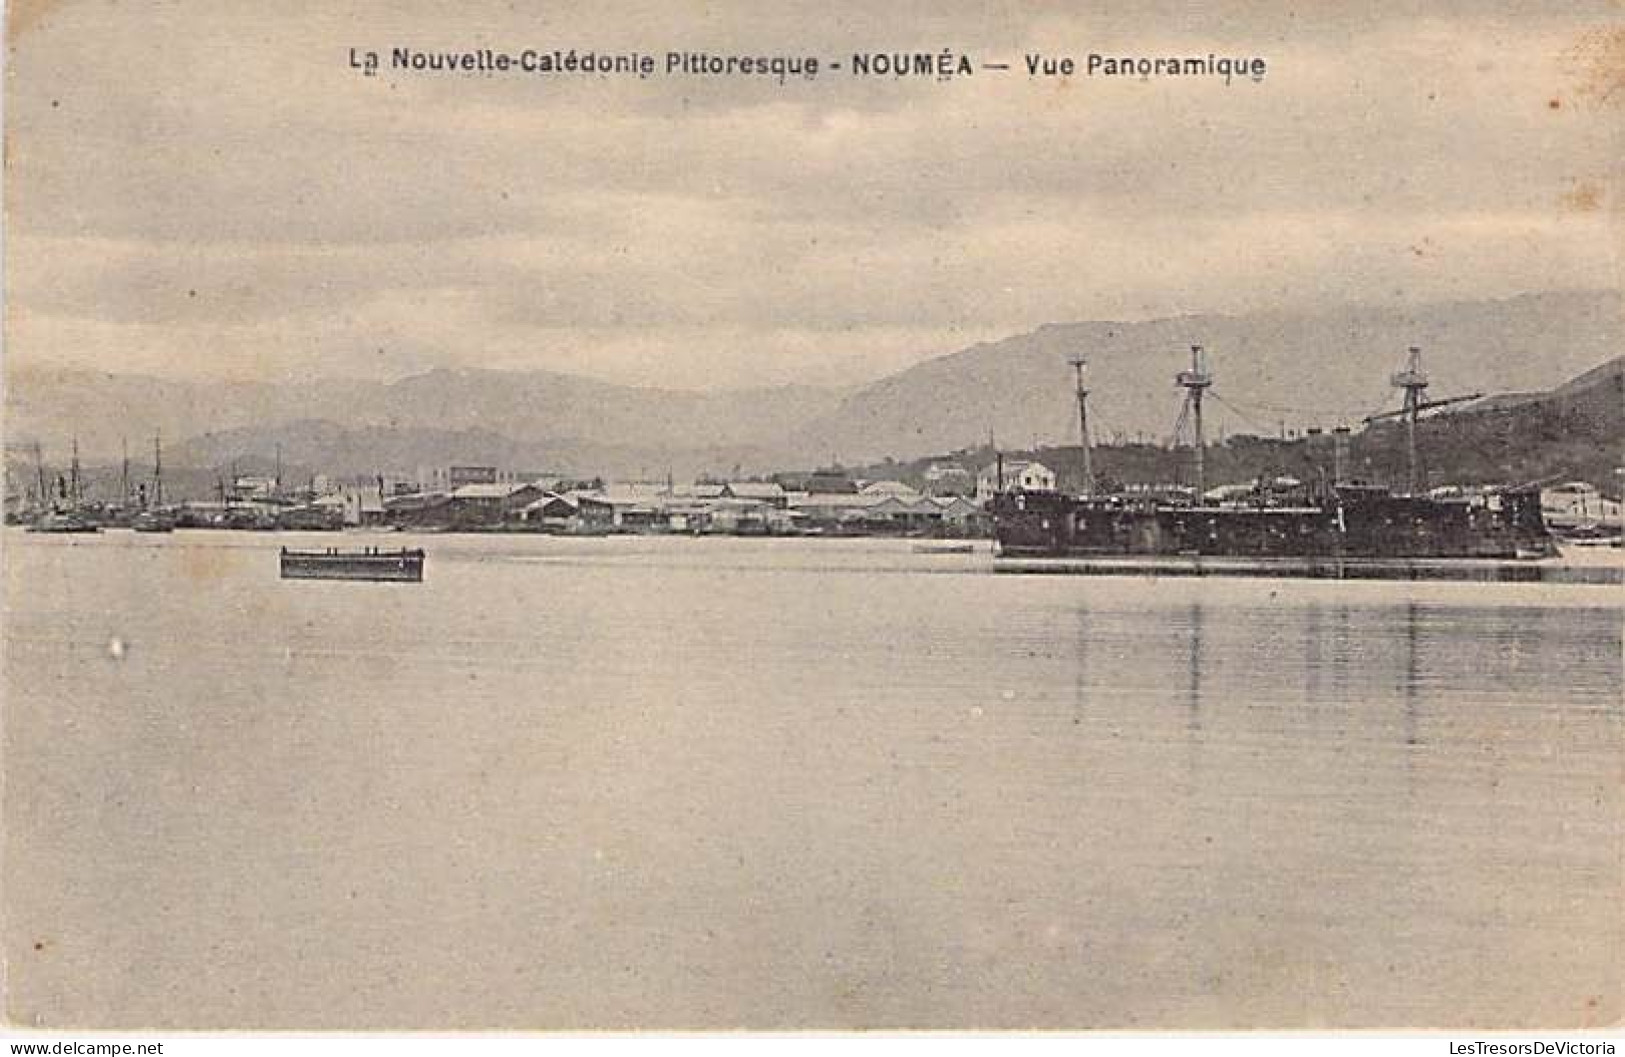 Nouvelle Calédonie Pittoresque - Nouméa - Vue Panoramique - Bateau - Béchade - Carte Postale Ancienne - Nieuw-Caledonië